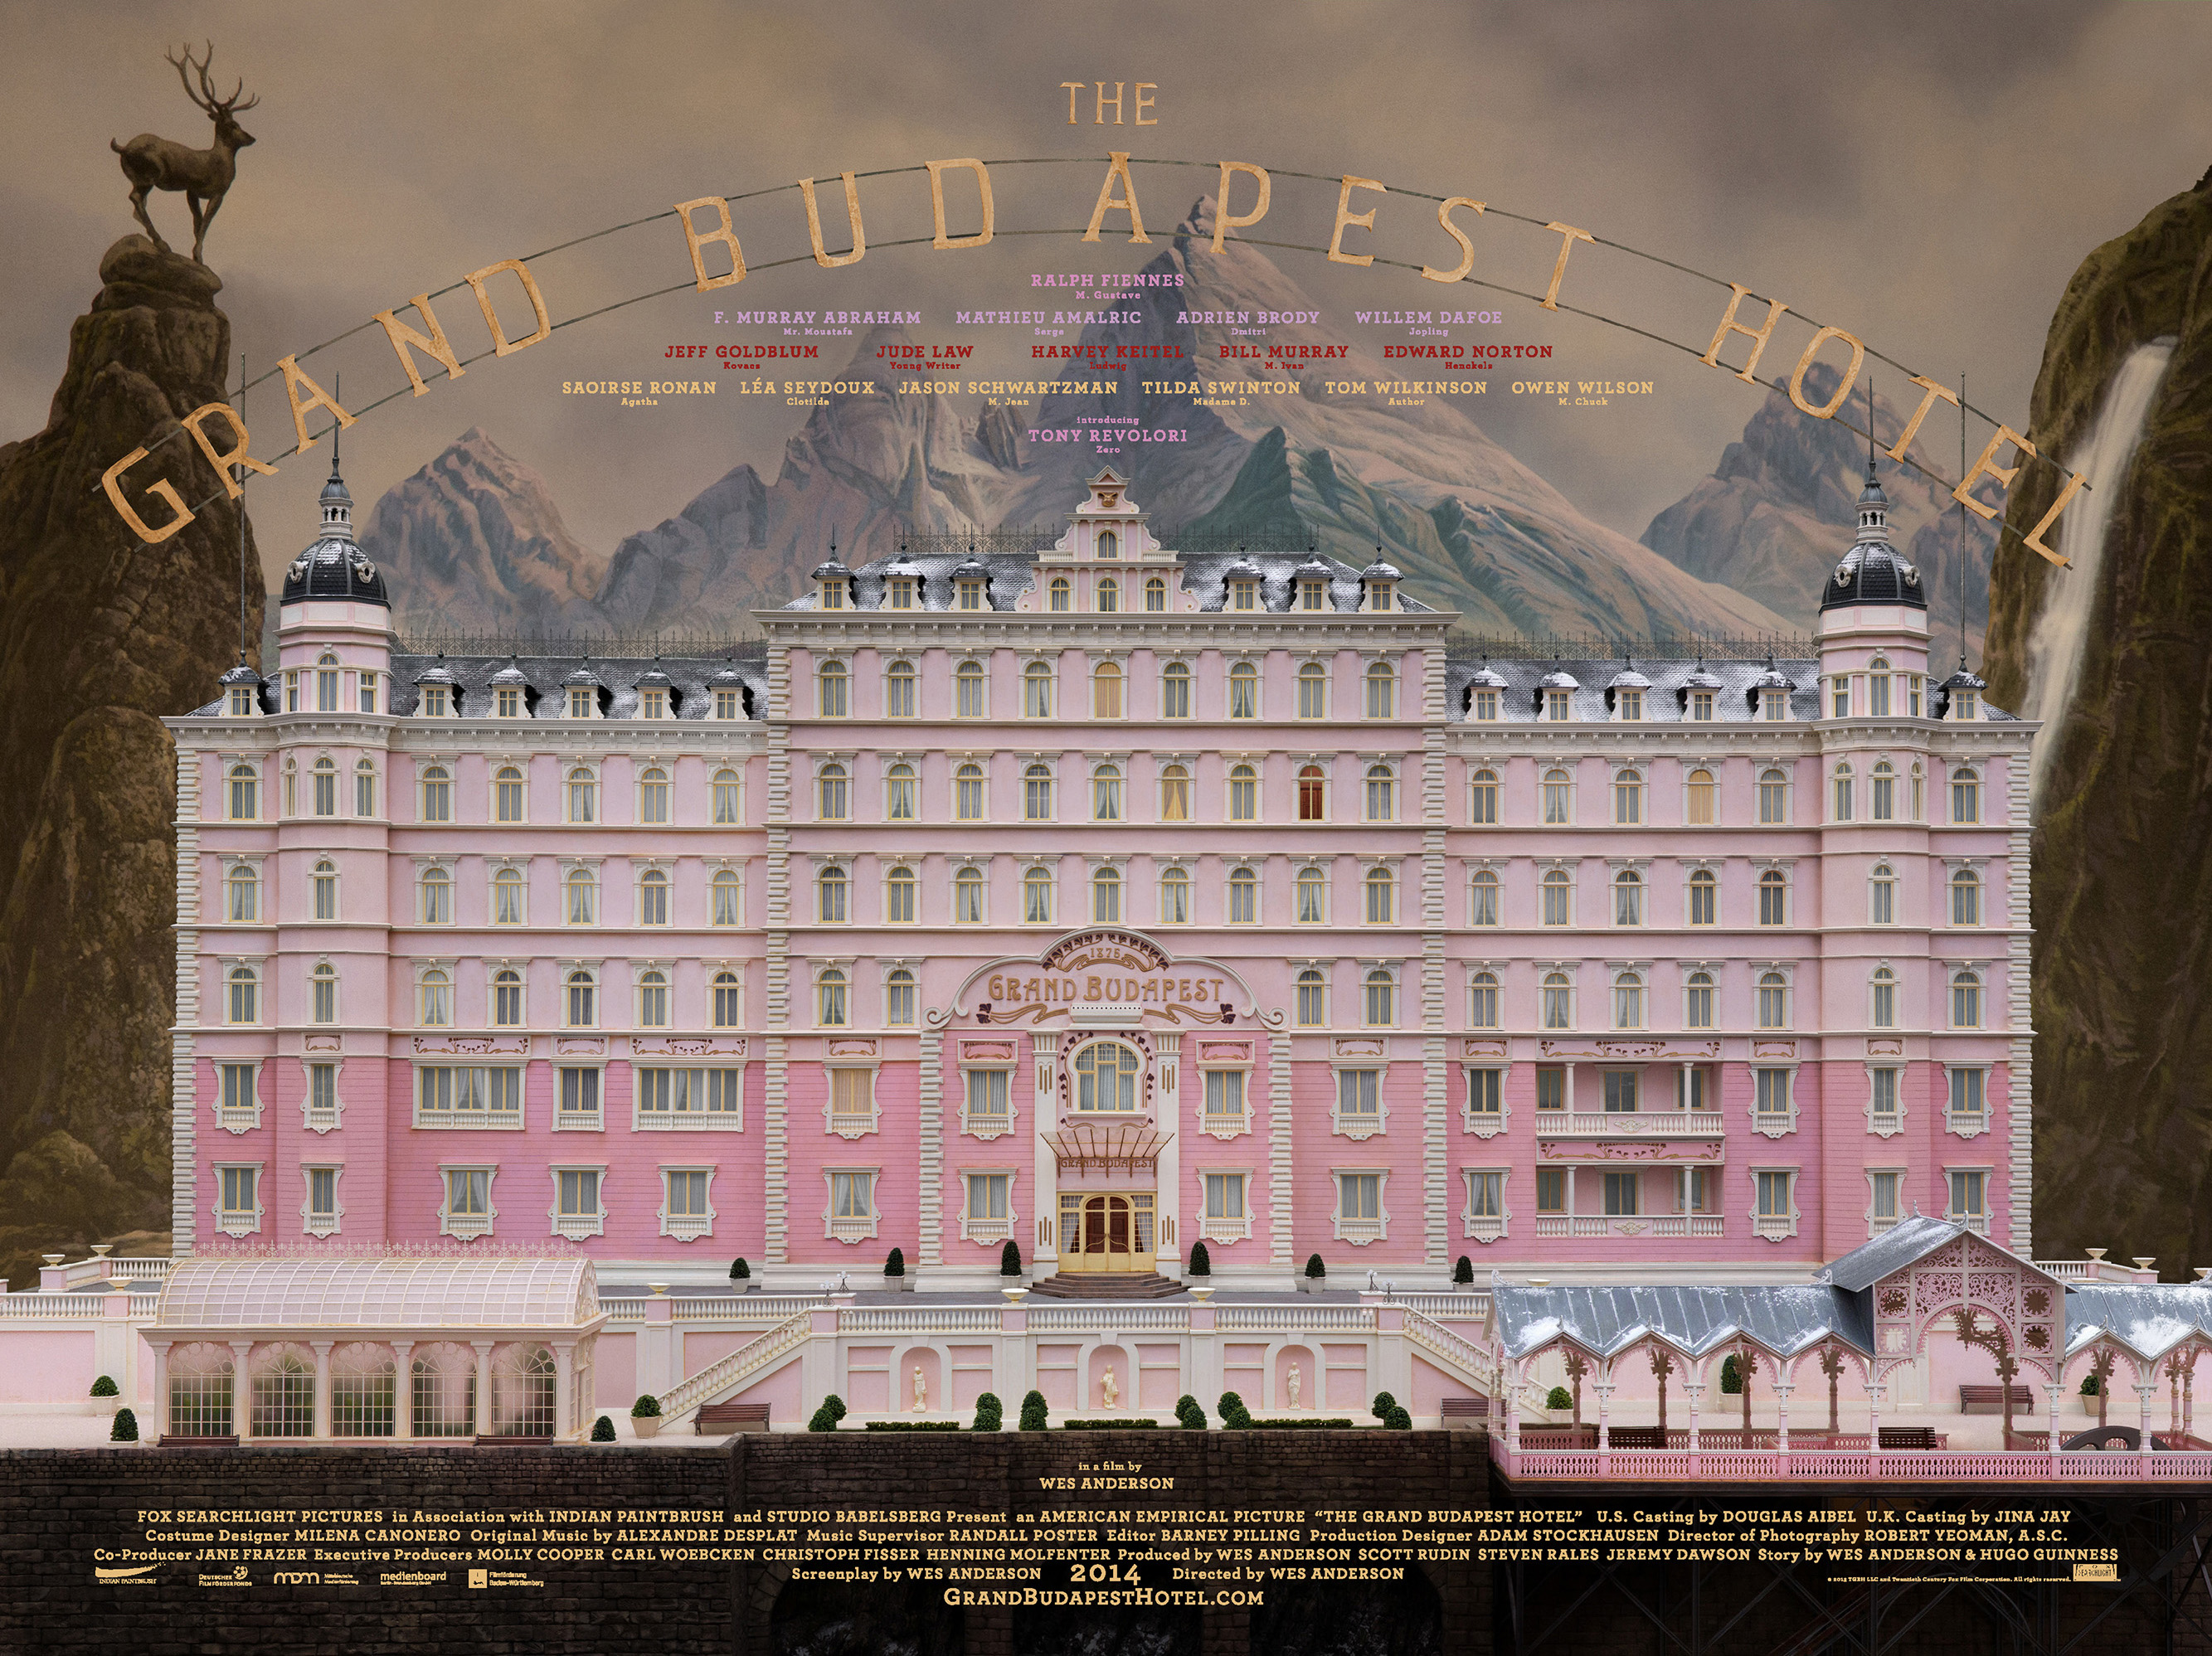 The-Grand-Budapest-Hotel-UK-Quad-Poster.jpg